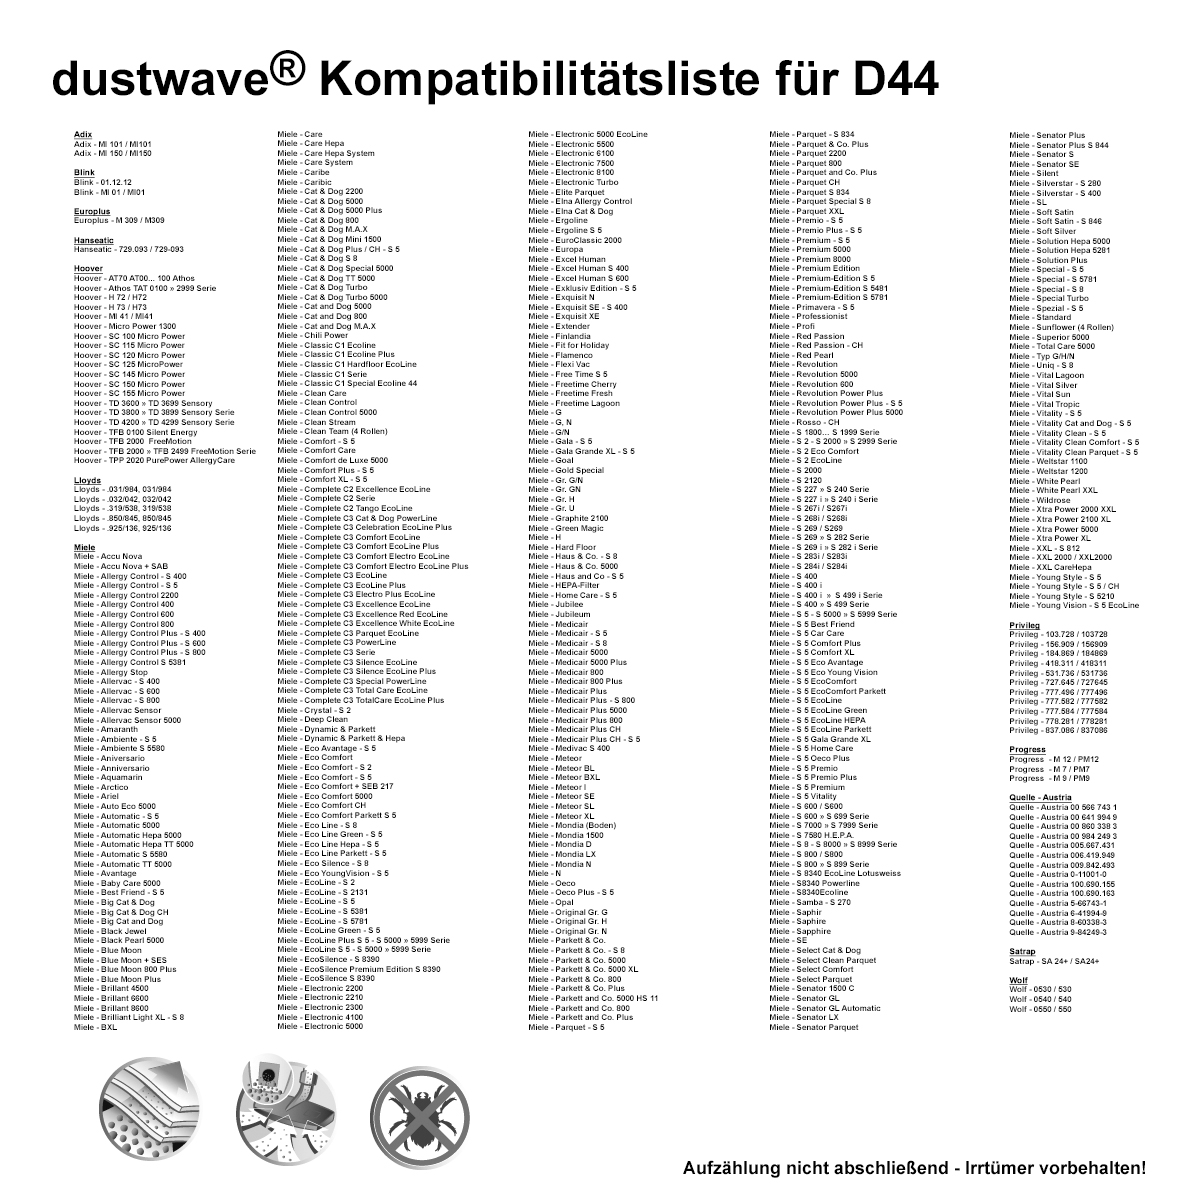 Dustwave® 1 Staubsaugerbeutel für Base BA 3101 - hocheffizient mit Hygieneverschluss - Made in Germany